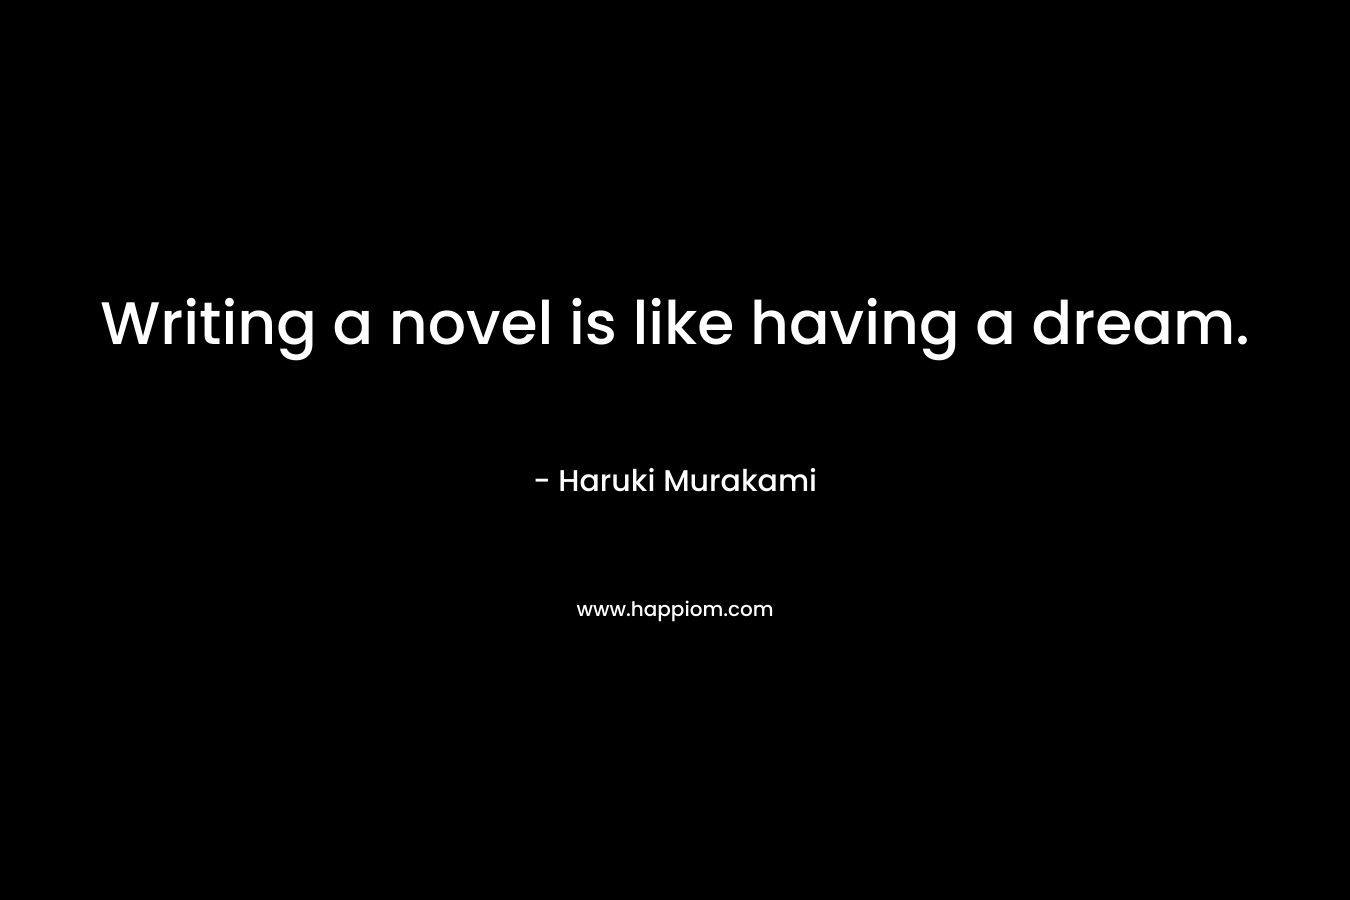 Writing a novel is like having a dream.